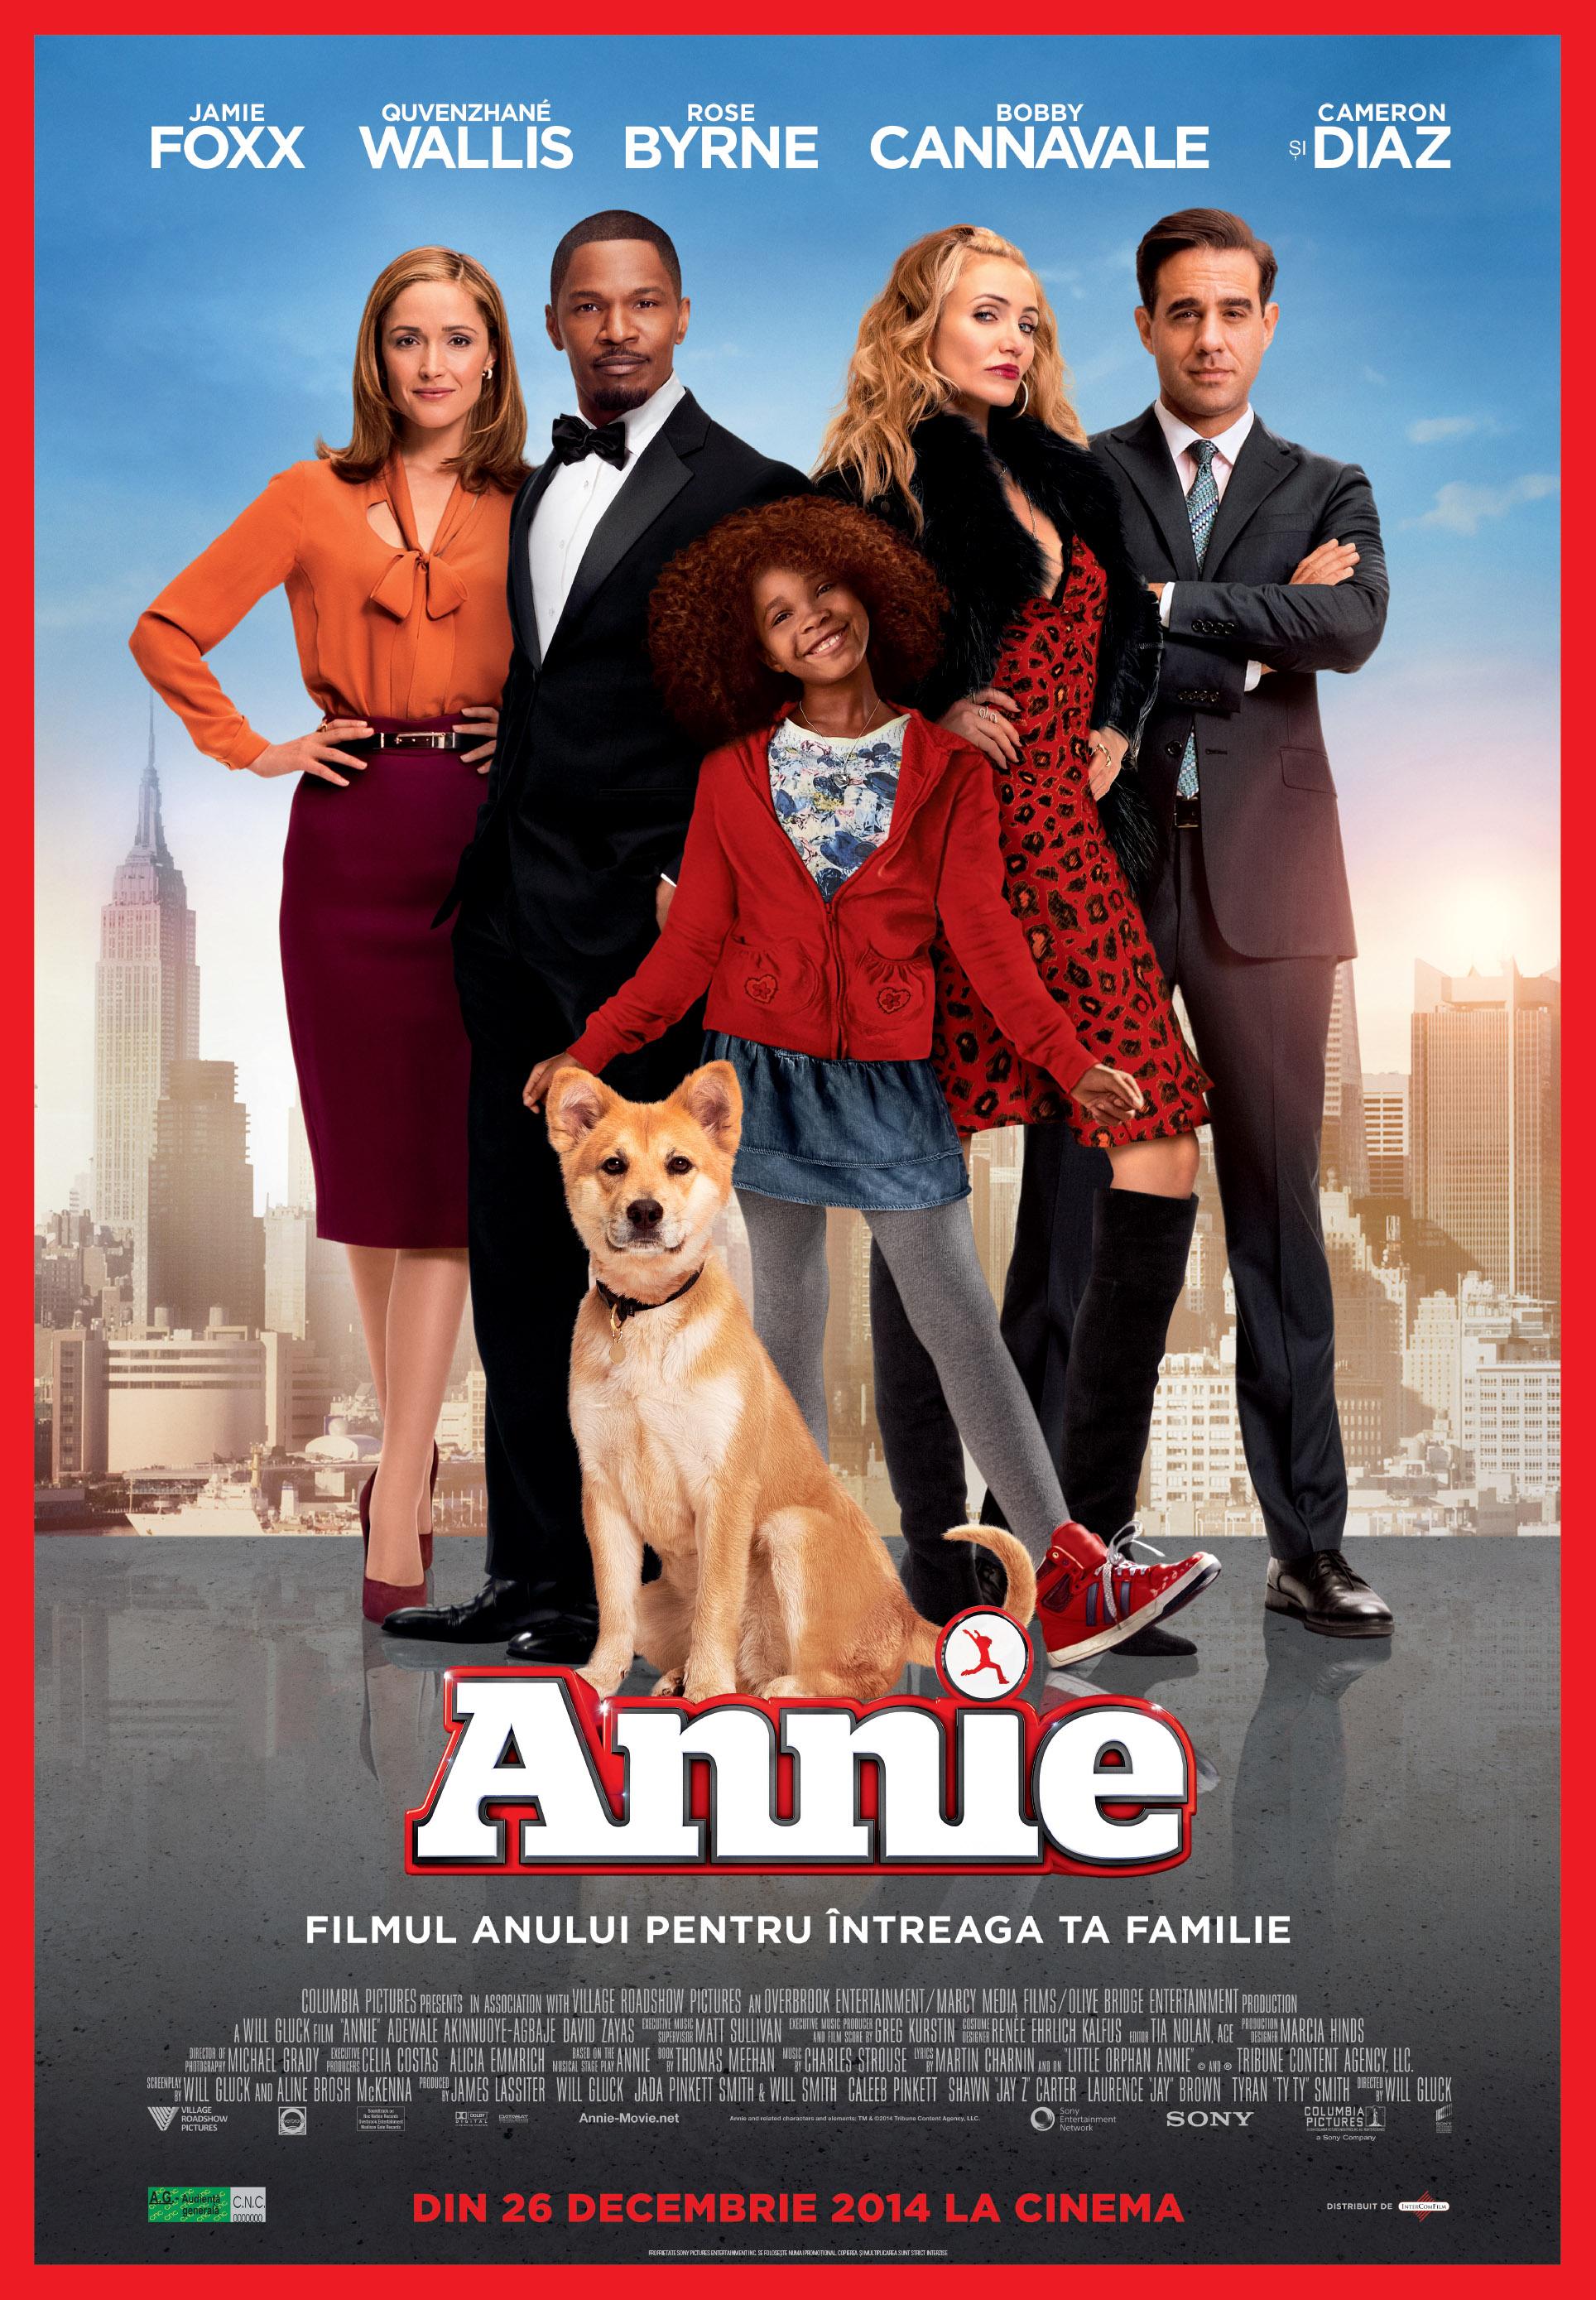 Delia Matache va dubla vocea lui Cameron Diaz în pelicula „Annie”, în cinematografe din 26 decembrie